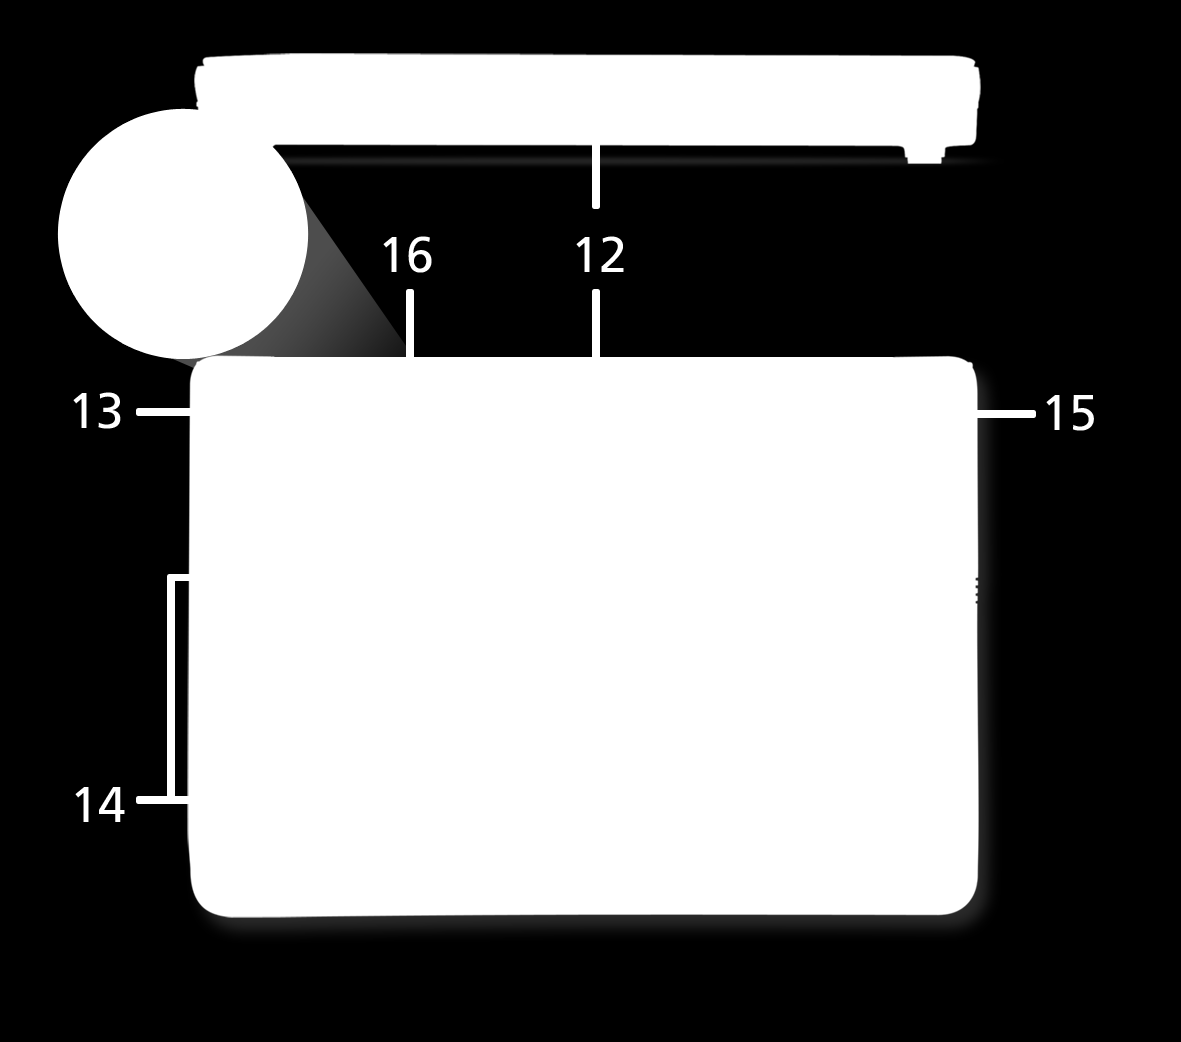 12 Akkufach Enthält den Akku des Computers. Hinweis: Der gezeigte Akku dient lediglich der Veranschaulichung.